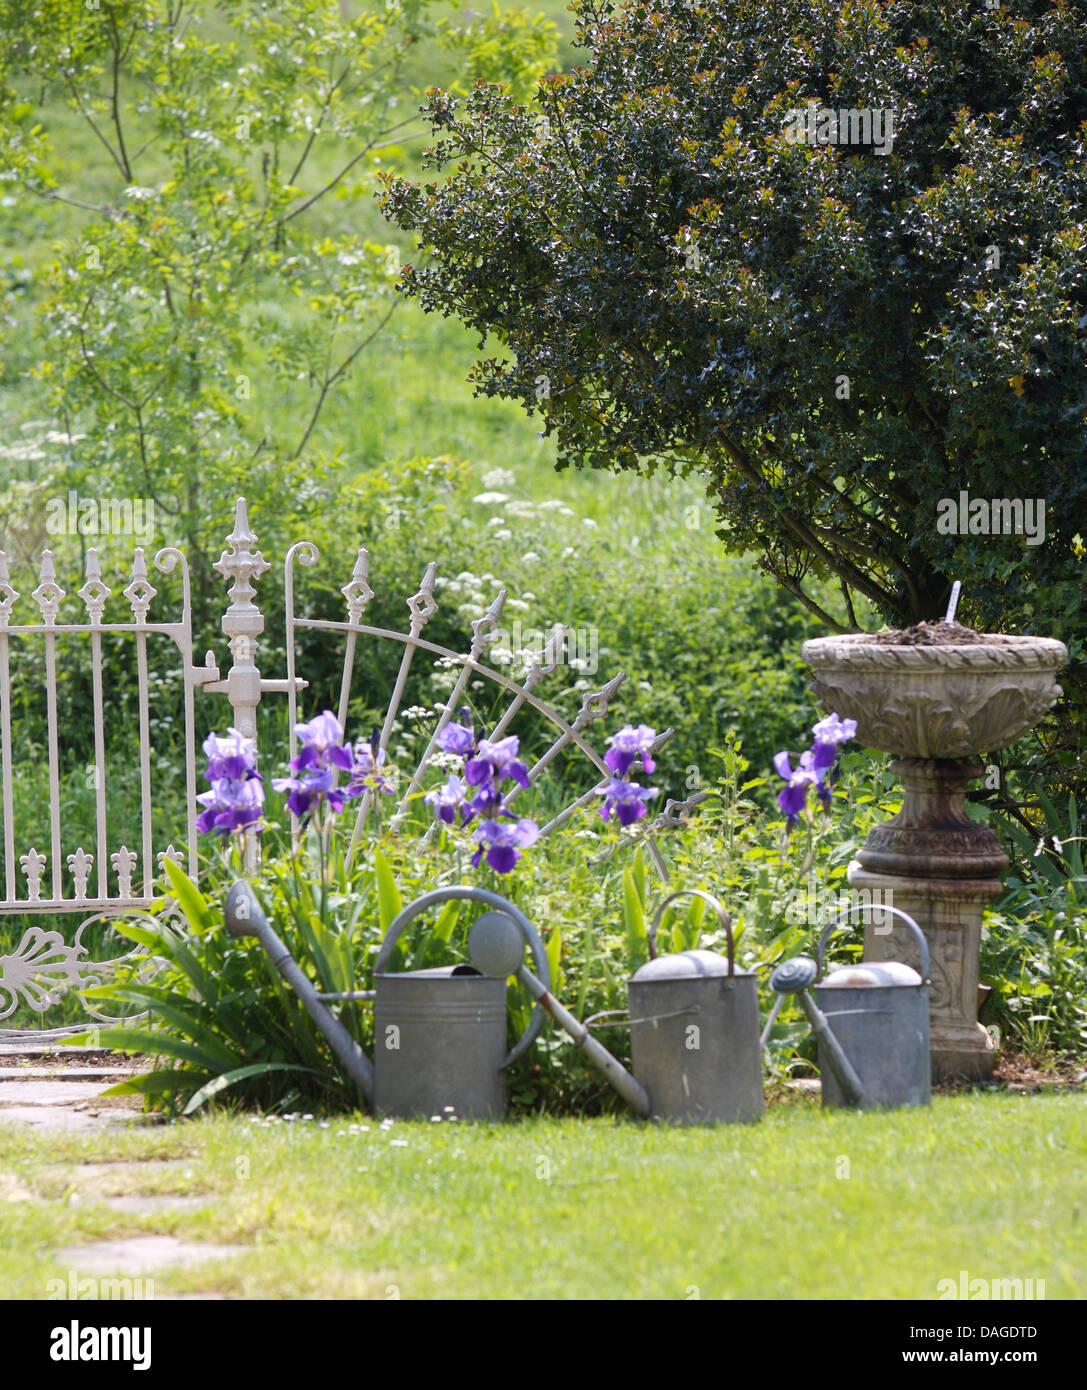 Iridi blu e tre vecchi zinco galvanizzato innaffiatoi accanto a meridiana di pietra accanto alle ringhiere in ferro in paese giardino in estate Foto Stock